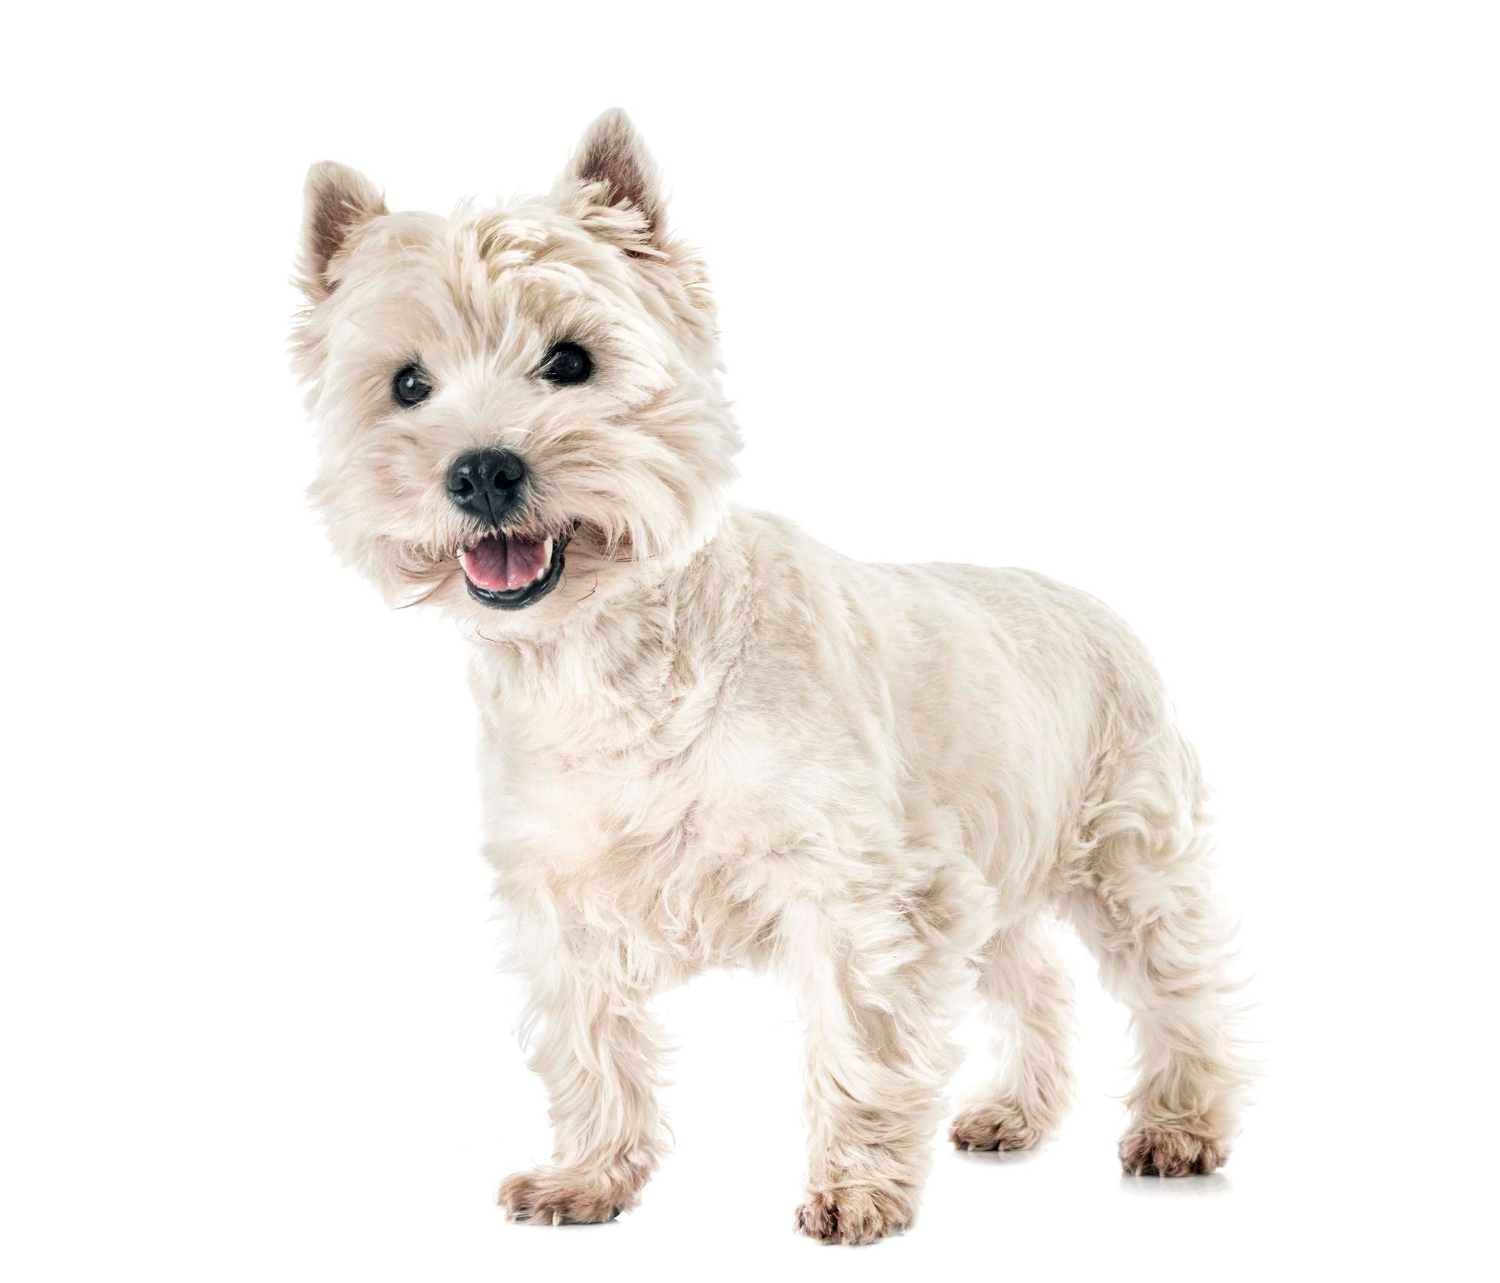 West highland white terrier - opis rasy.